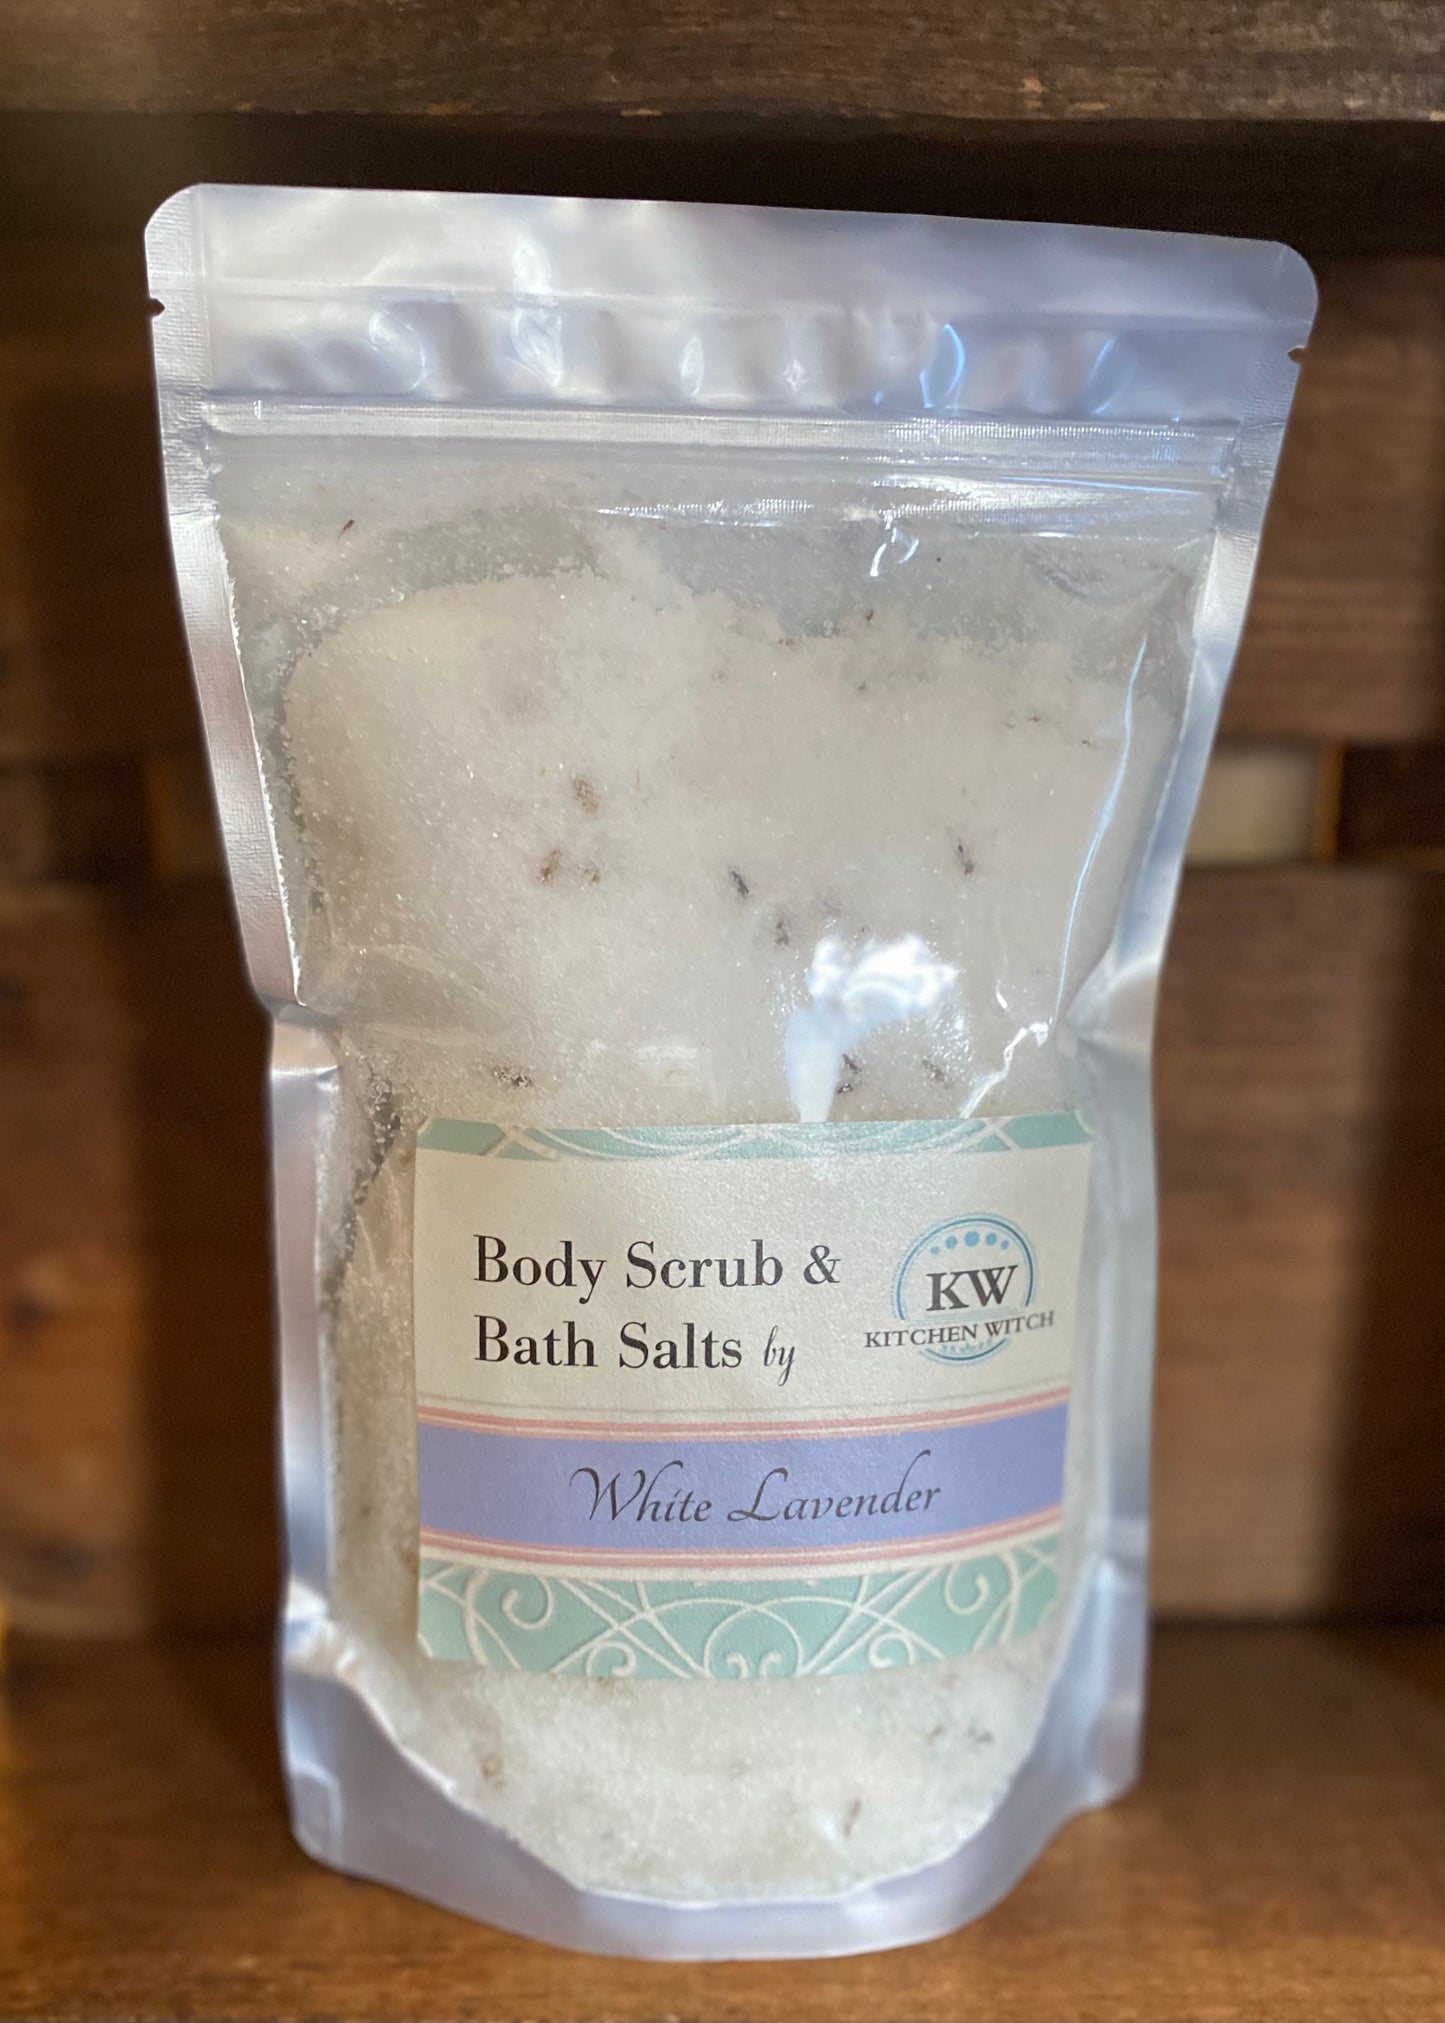 White Lavender Body Scrub & Bath Salts